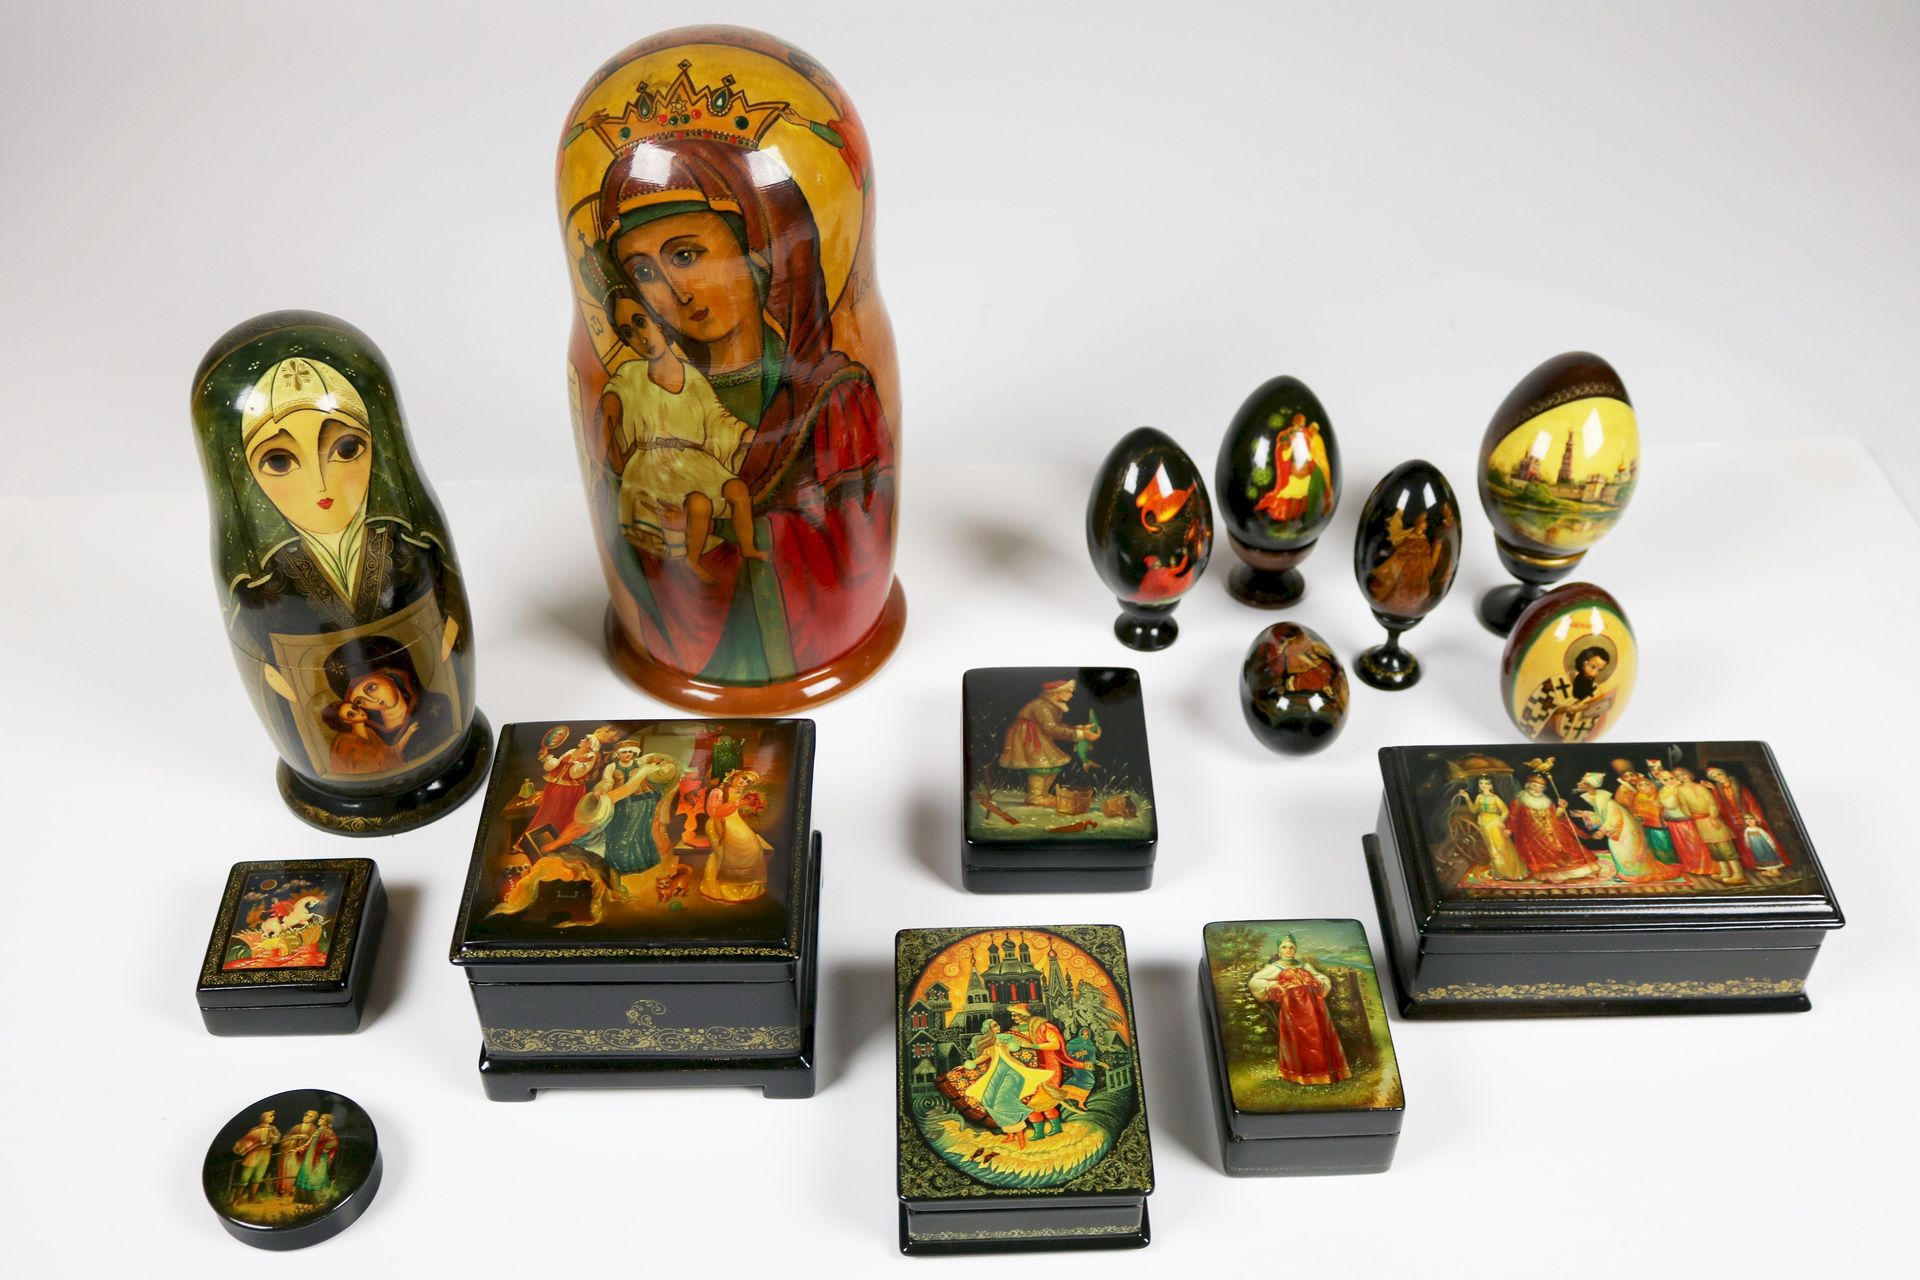 Null 莫斯科，1990-1992

两个俄罗斯娃娃，六个鸡蛋和六个盒子



油漆木雕，有签名和日期

有四个小底座

较大的玩偶 H: 30 D: 14
&hellip;